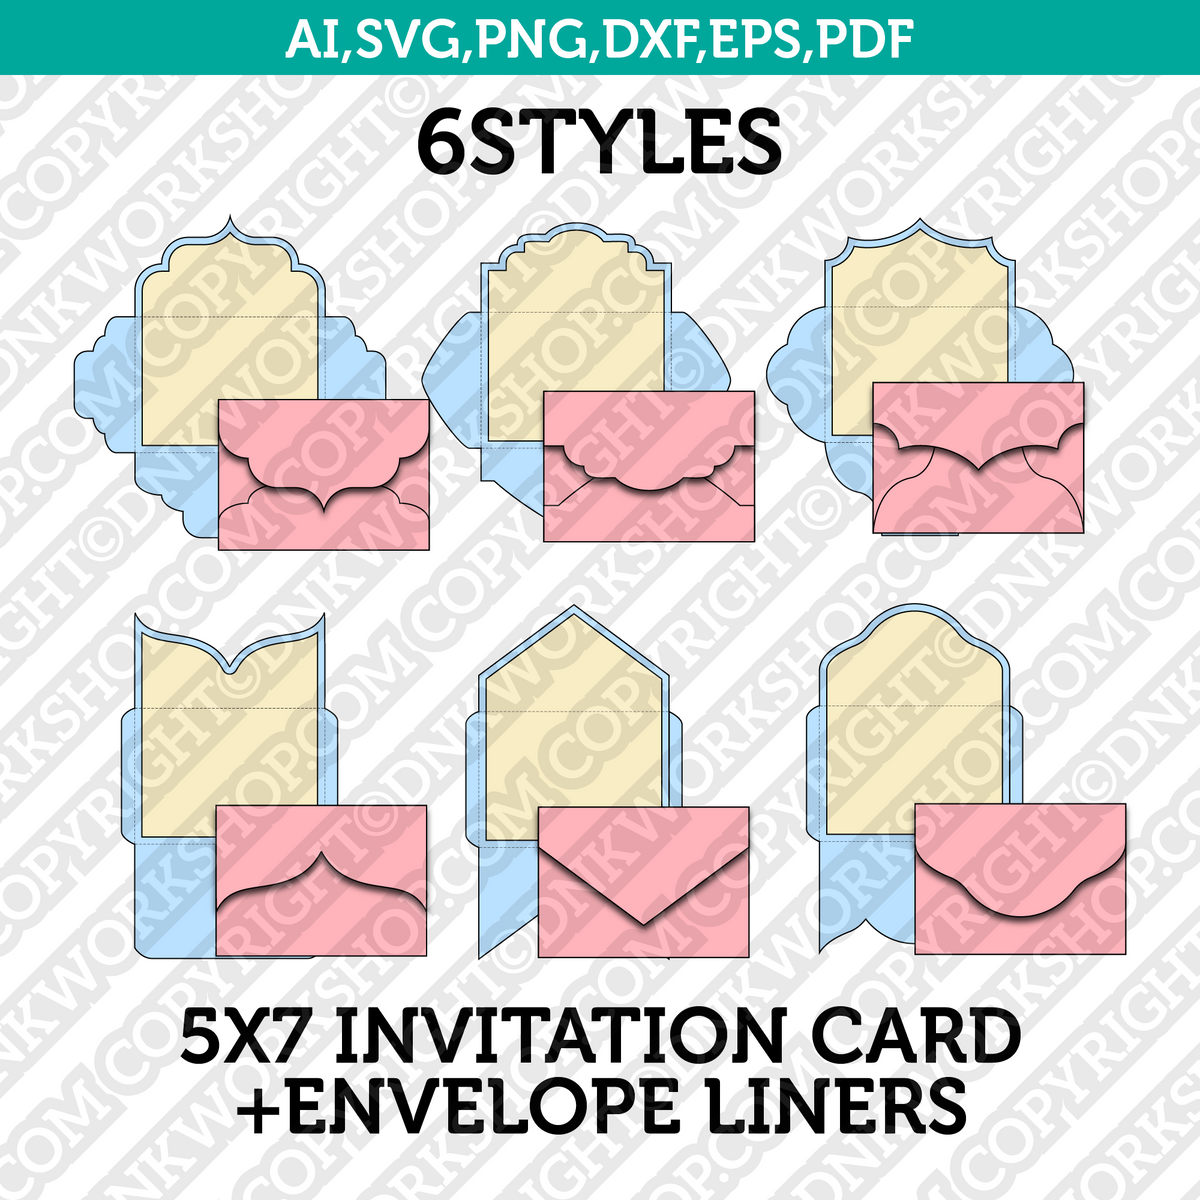 Simple blank pocket envelopes 5x7 digital template svg set - Inspire Uplift